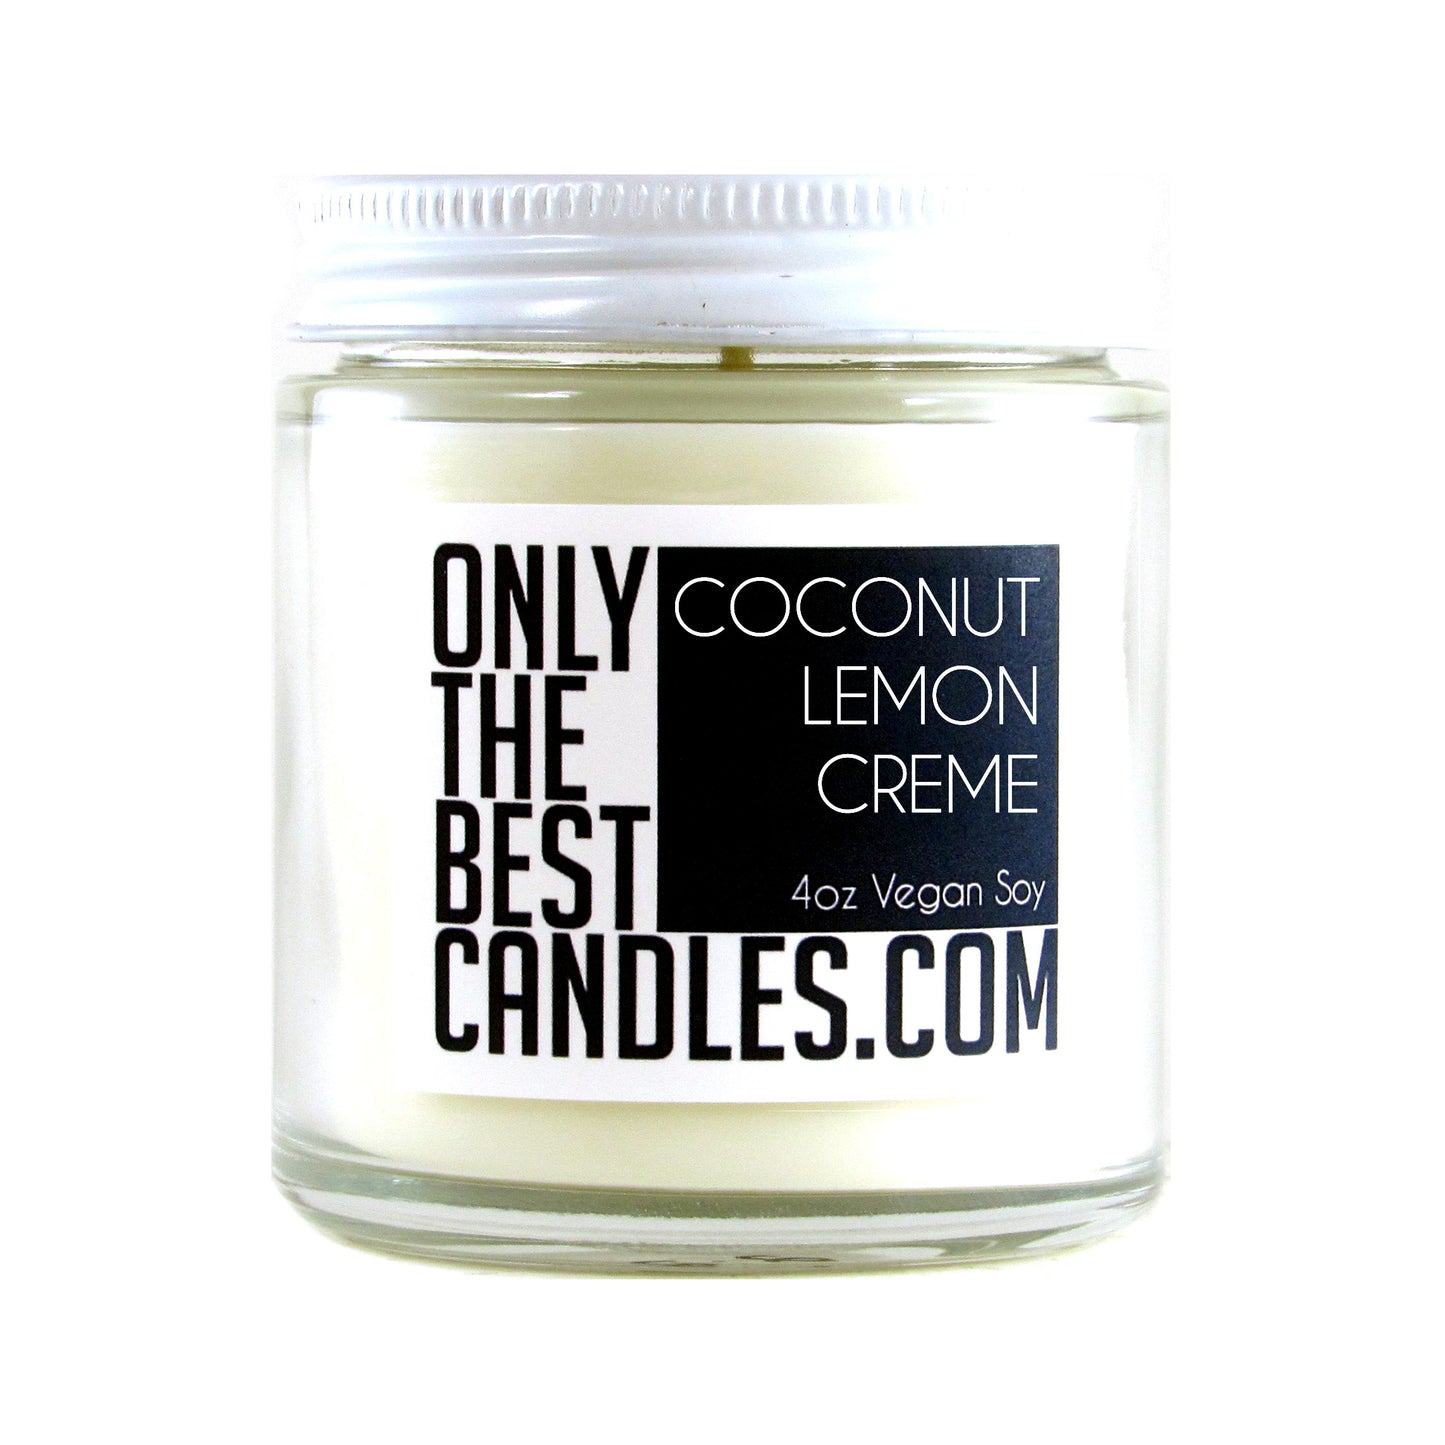 Coconut Lemon Creme 4oz Candle